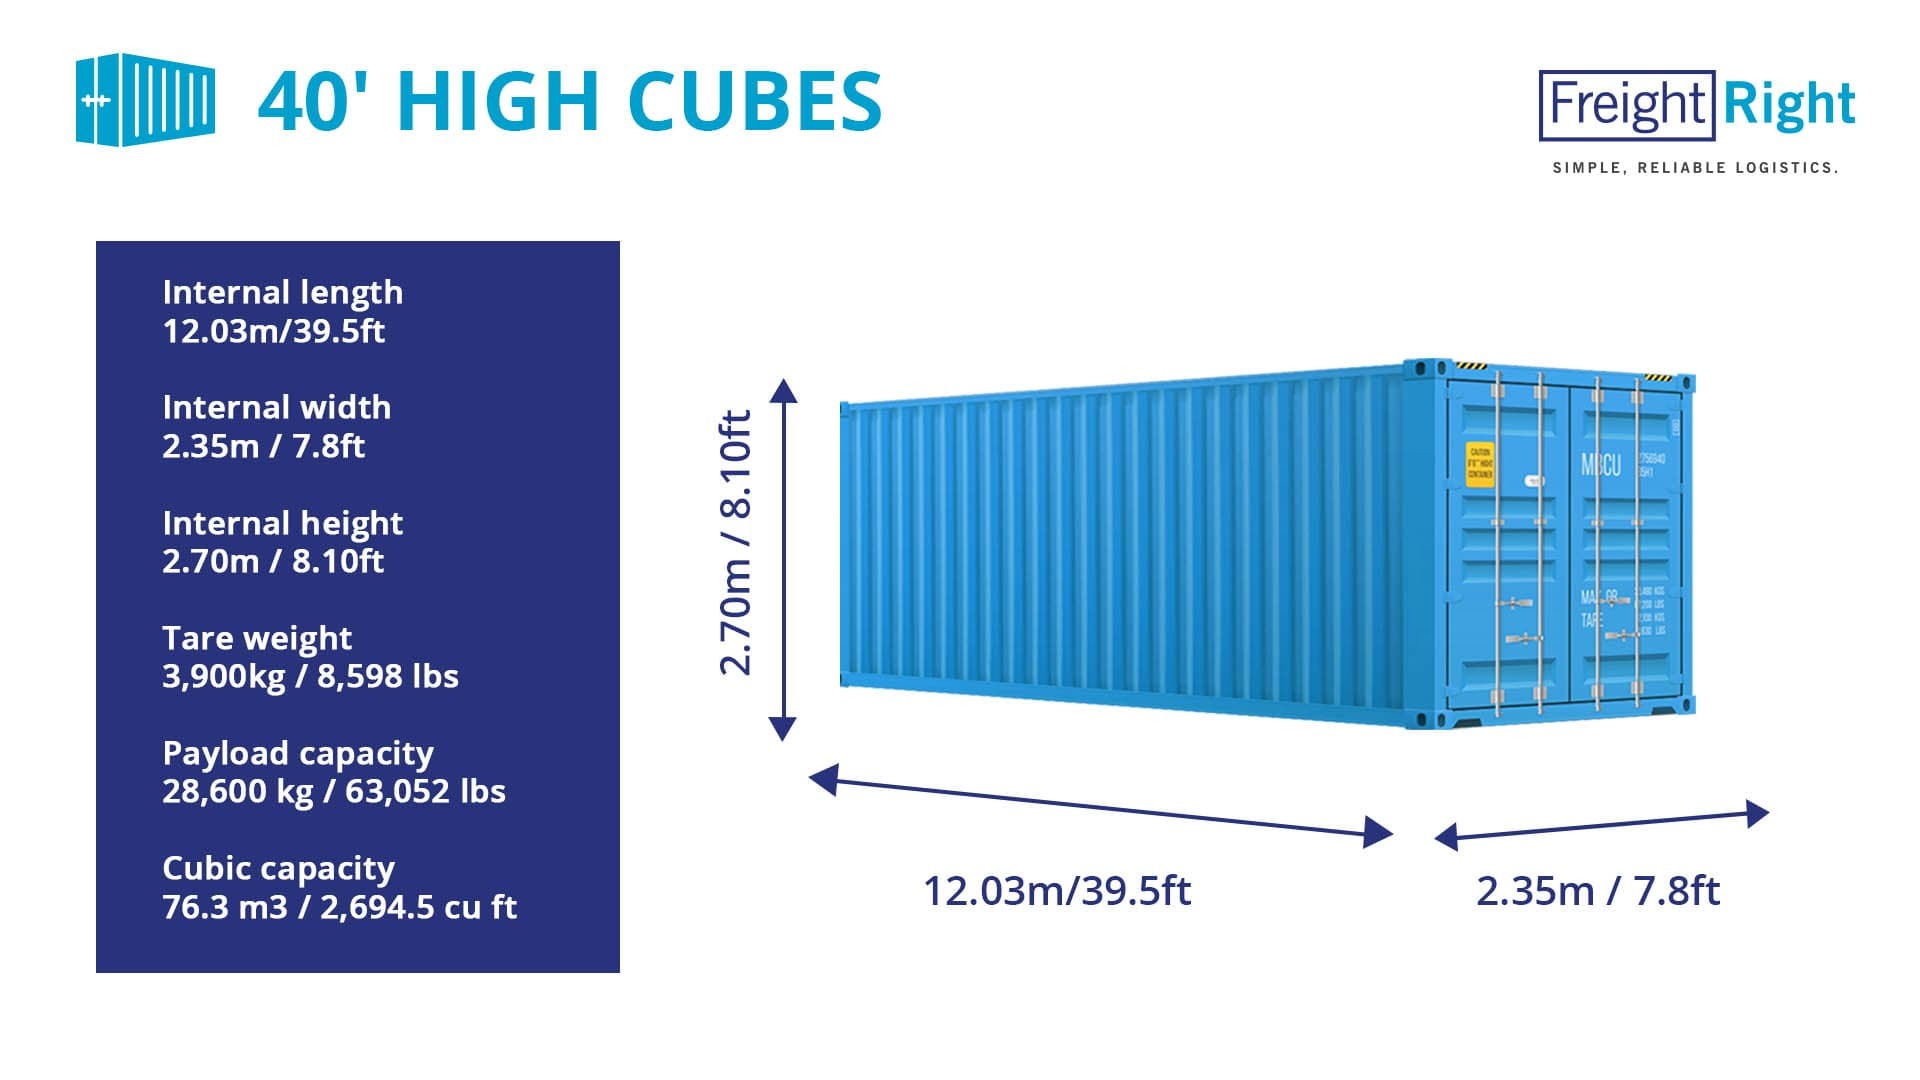 Внутренние размеры контейнера 20 футов. Контейнер 40 HC/hq (High Cube). Контейнер 40 фут Хай Кьюб размер. Габариты 40 фут контейнера High Cube. Размеры морского контейнера 40 футов High Cube.